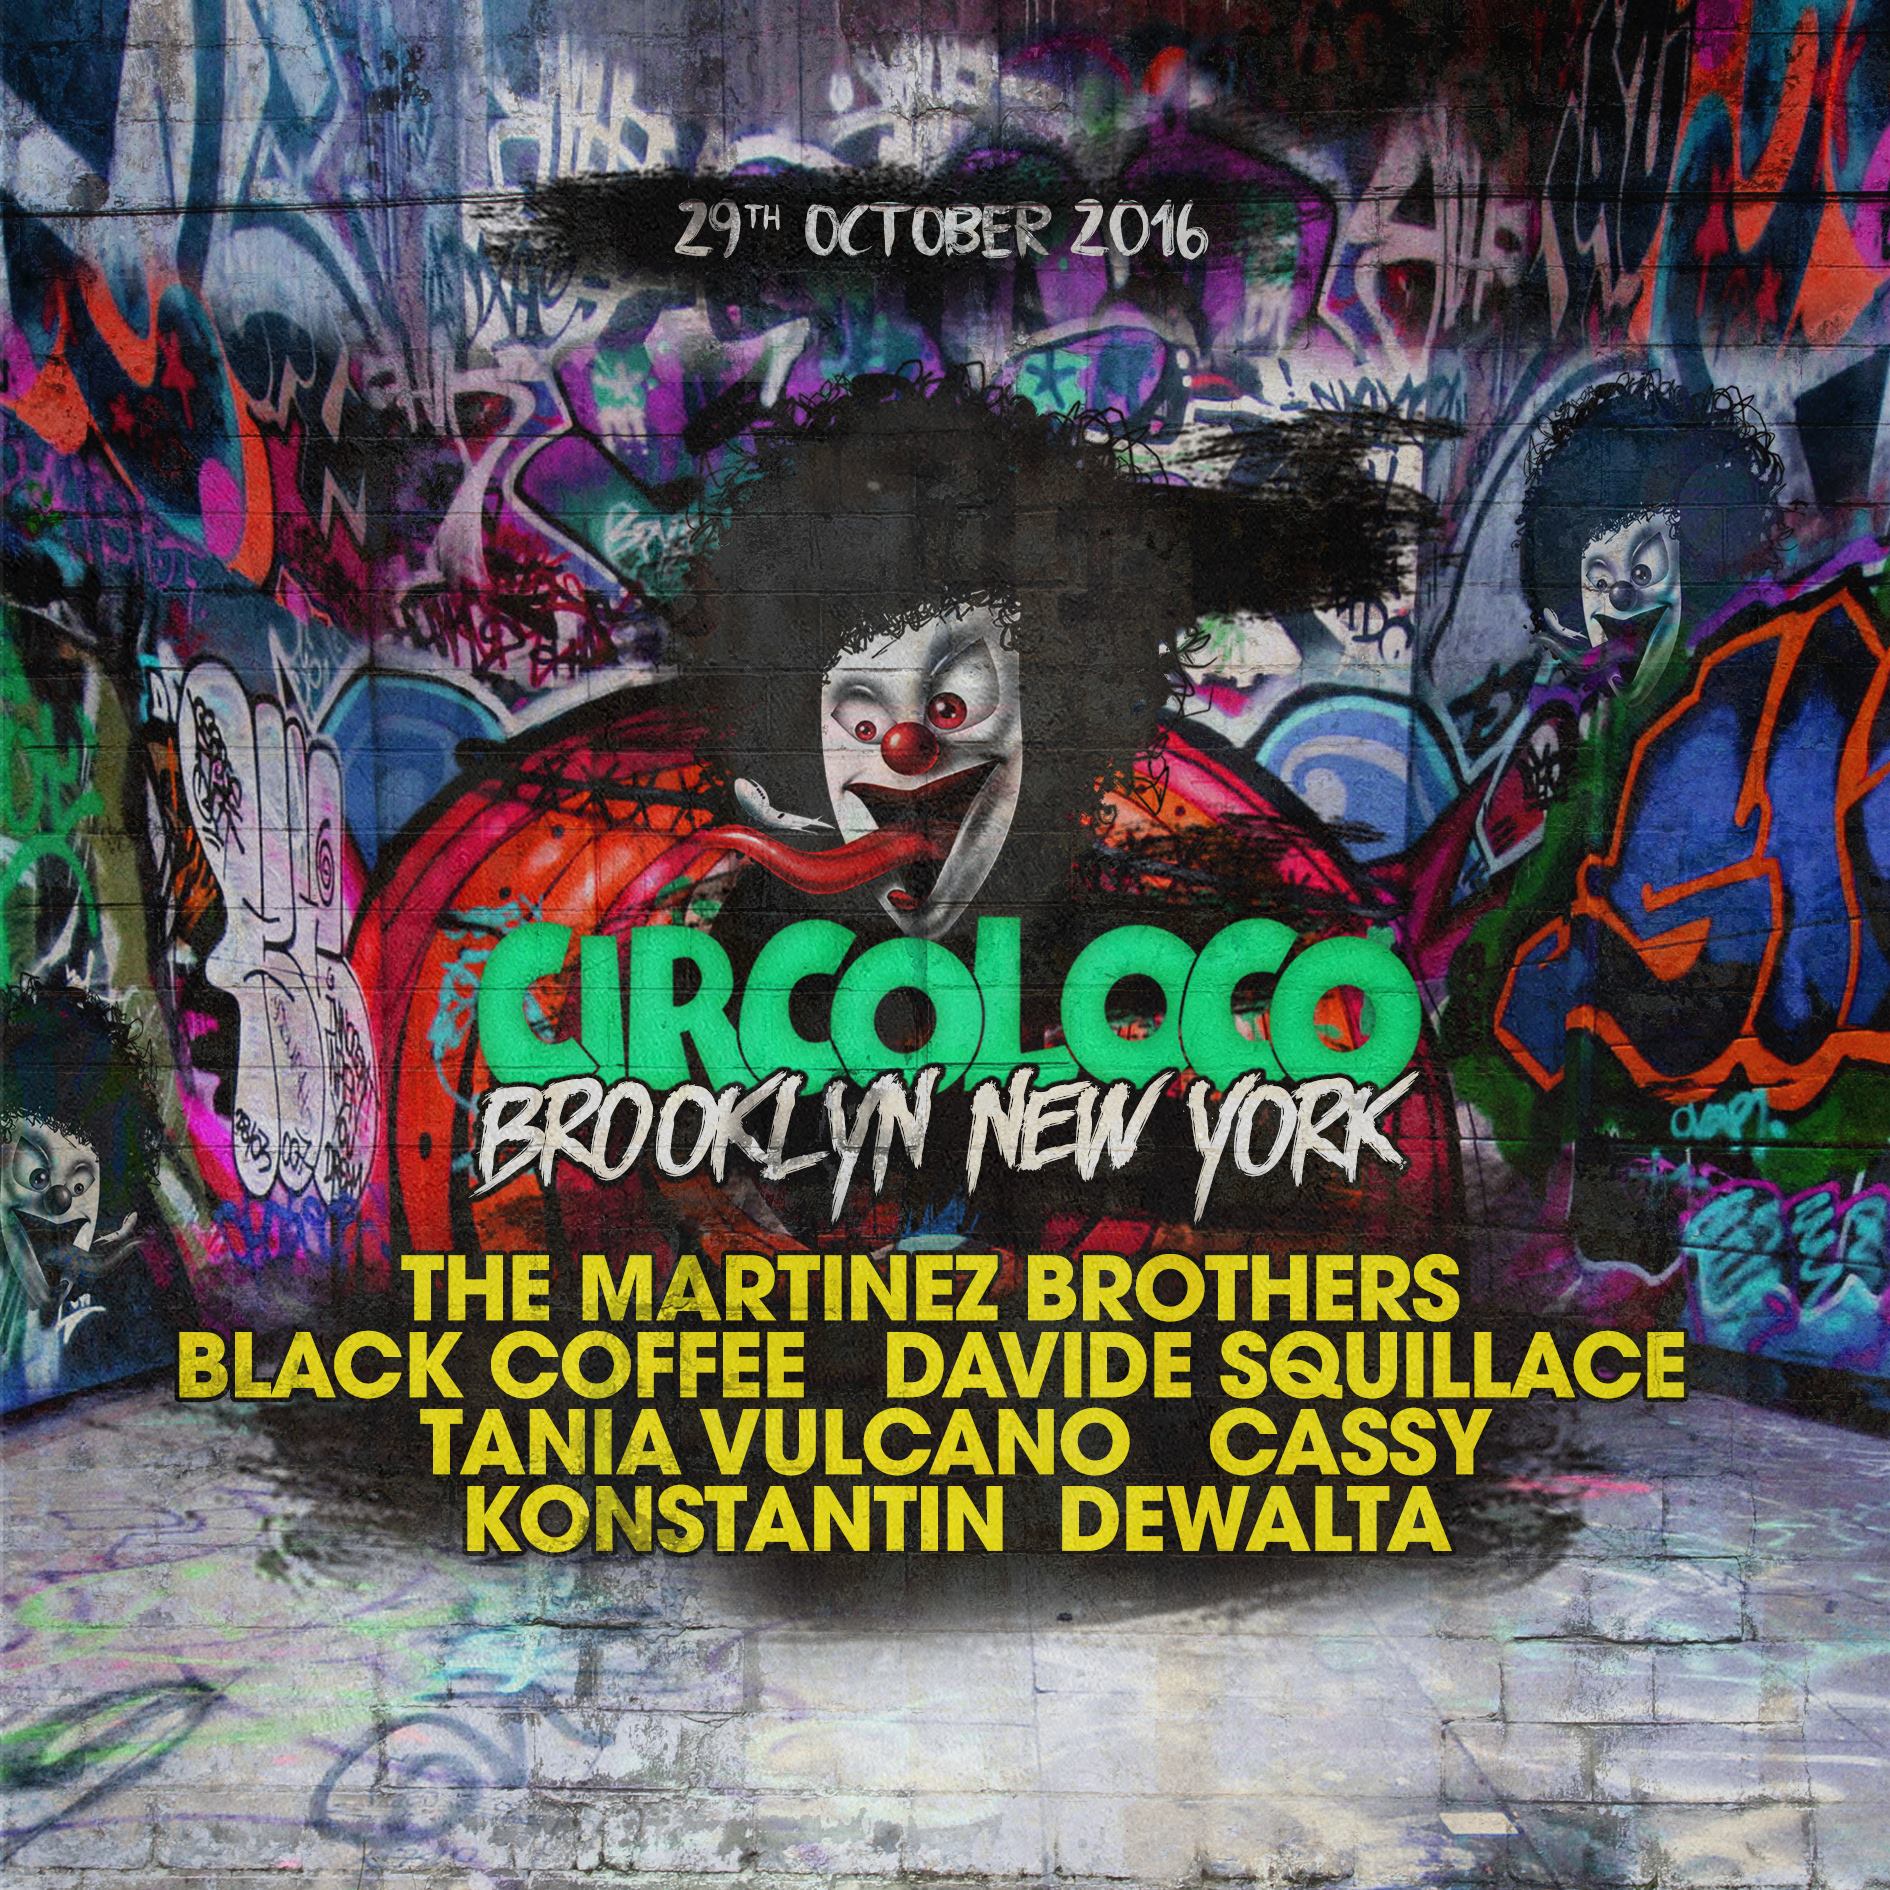 Circoloco New York 2016 Lineup poster image